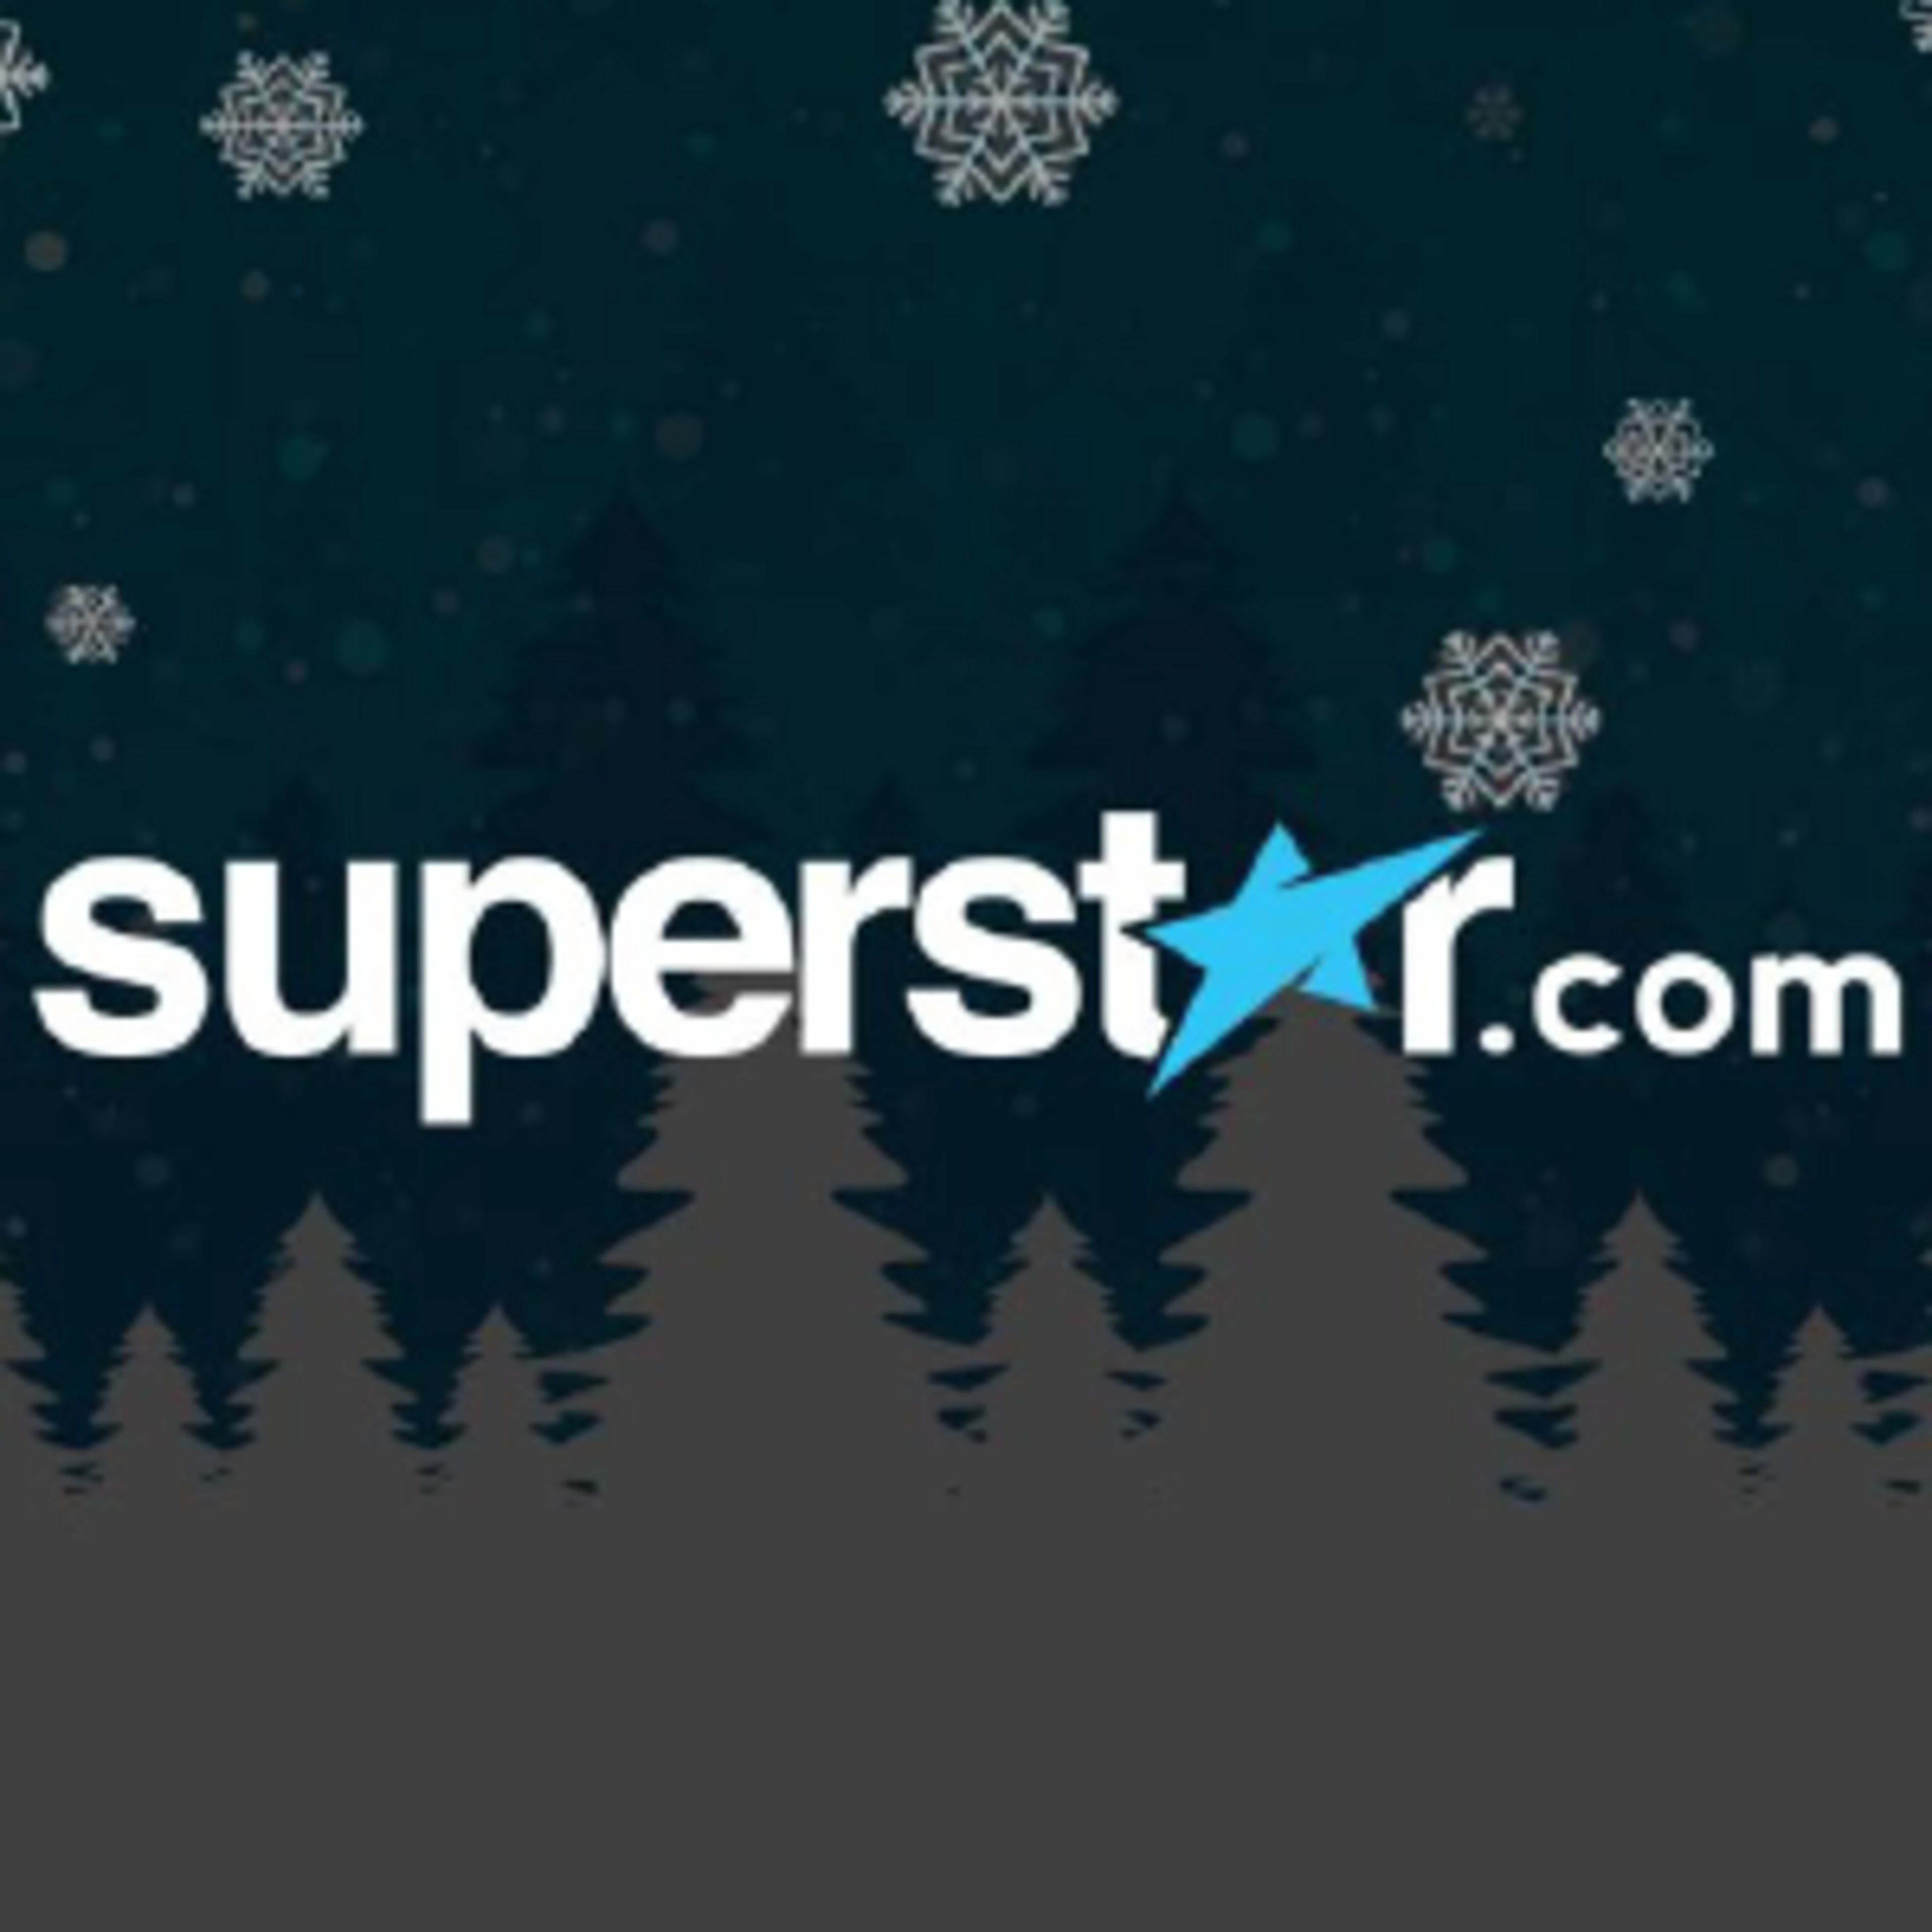 SuperStar.com Code